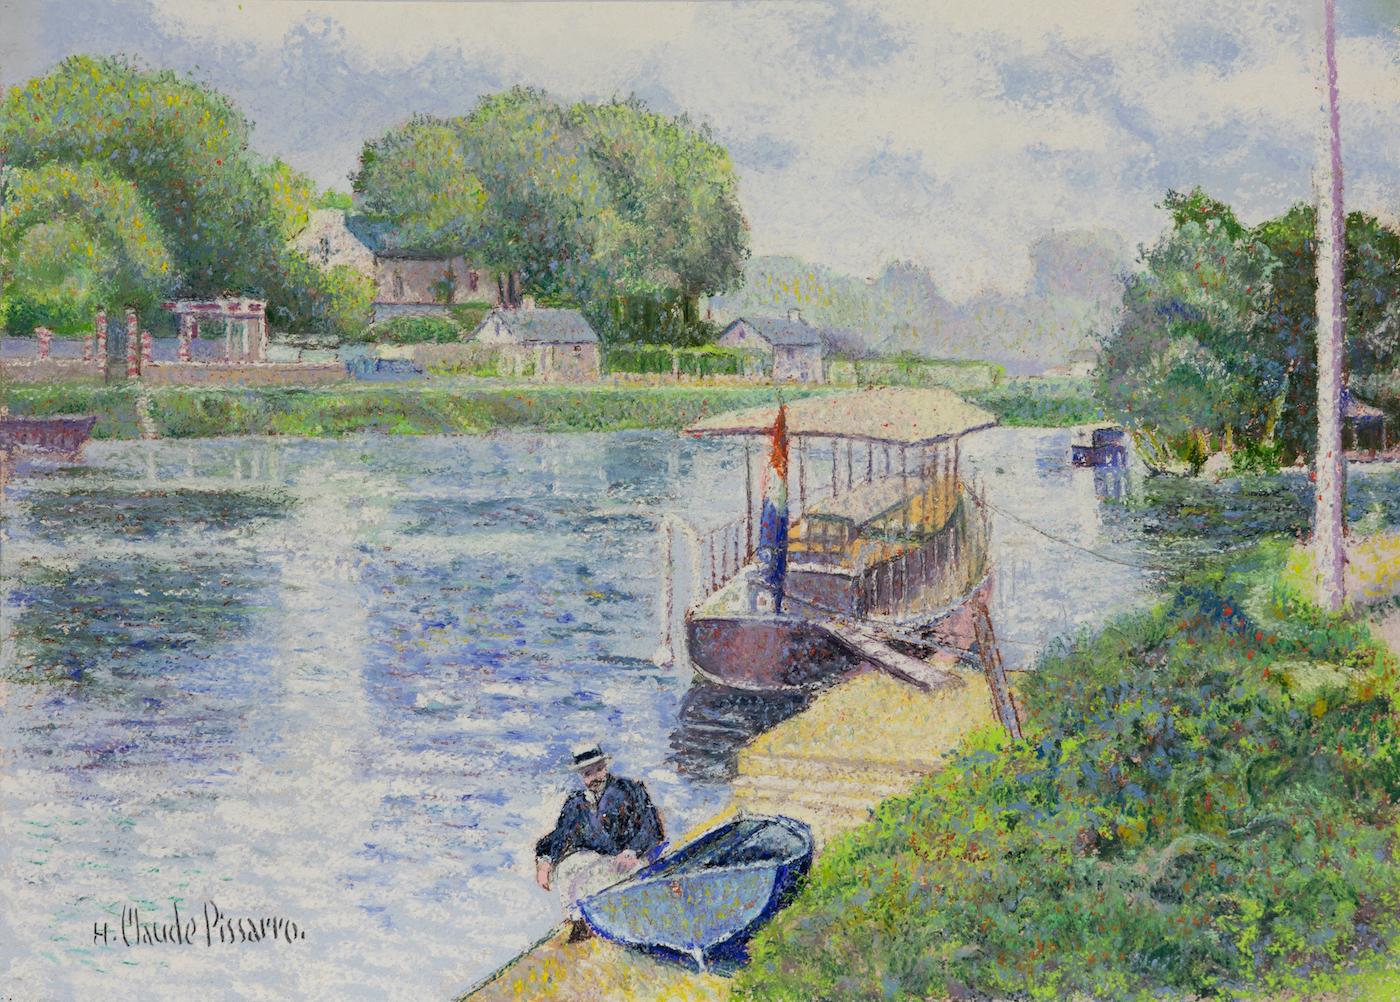 La Marne à Lagny (Quai de la Gourdine) by H. Claude Pissarro - River scene